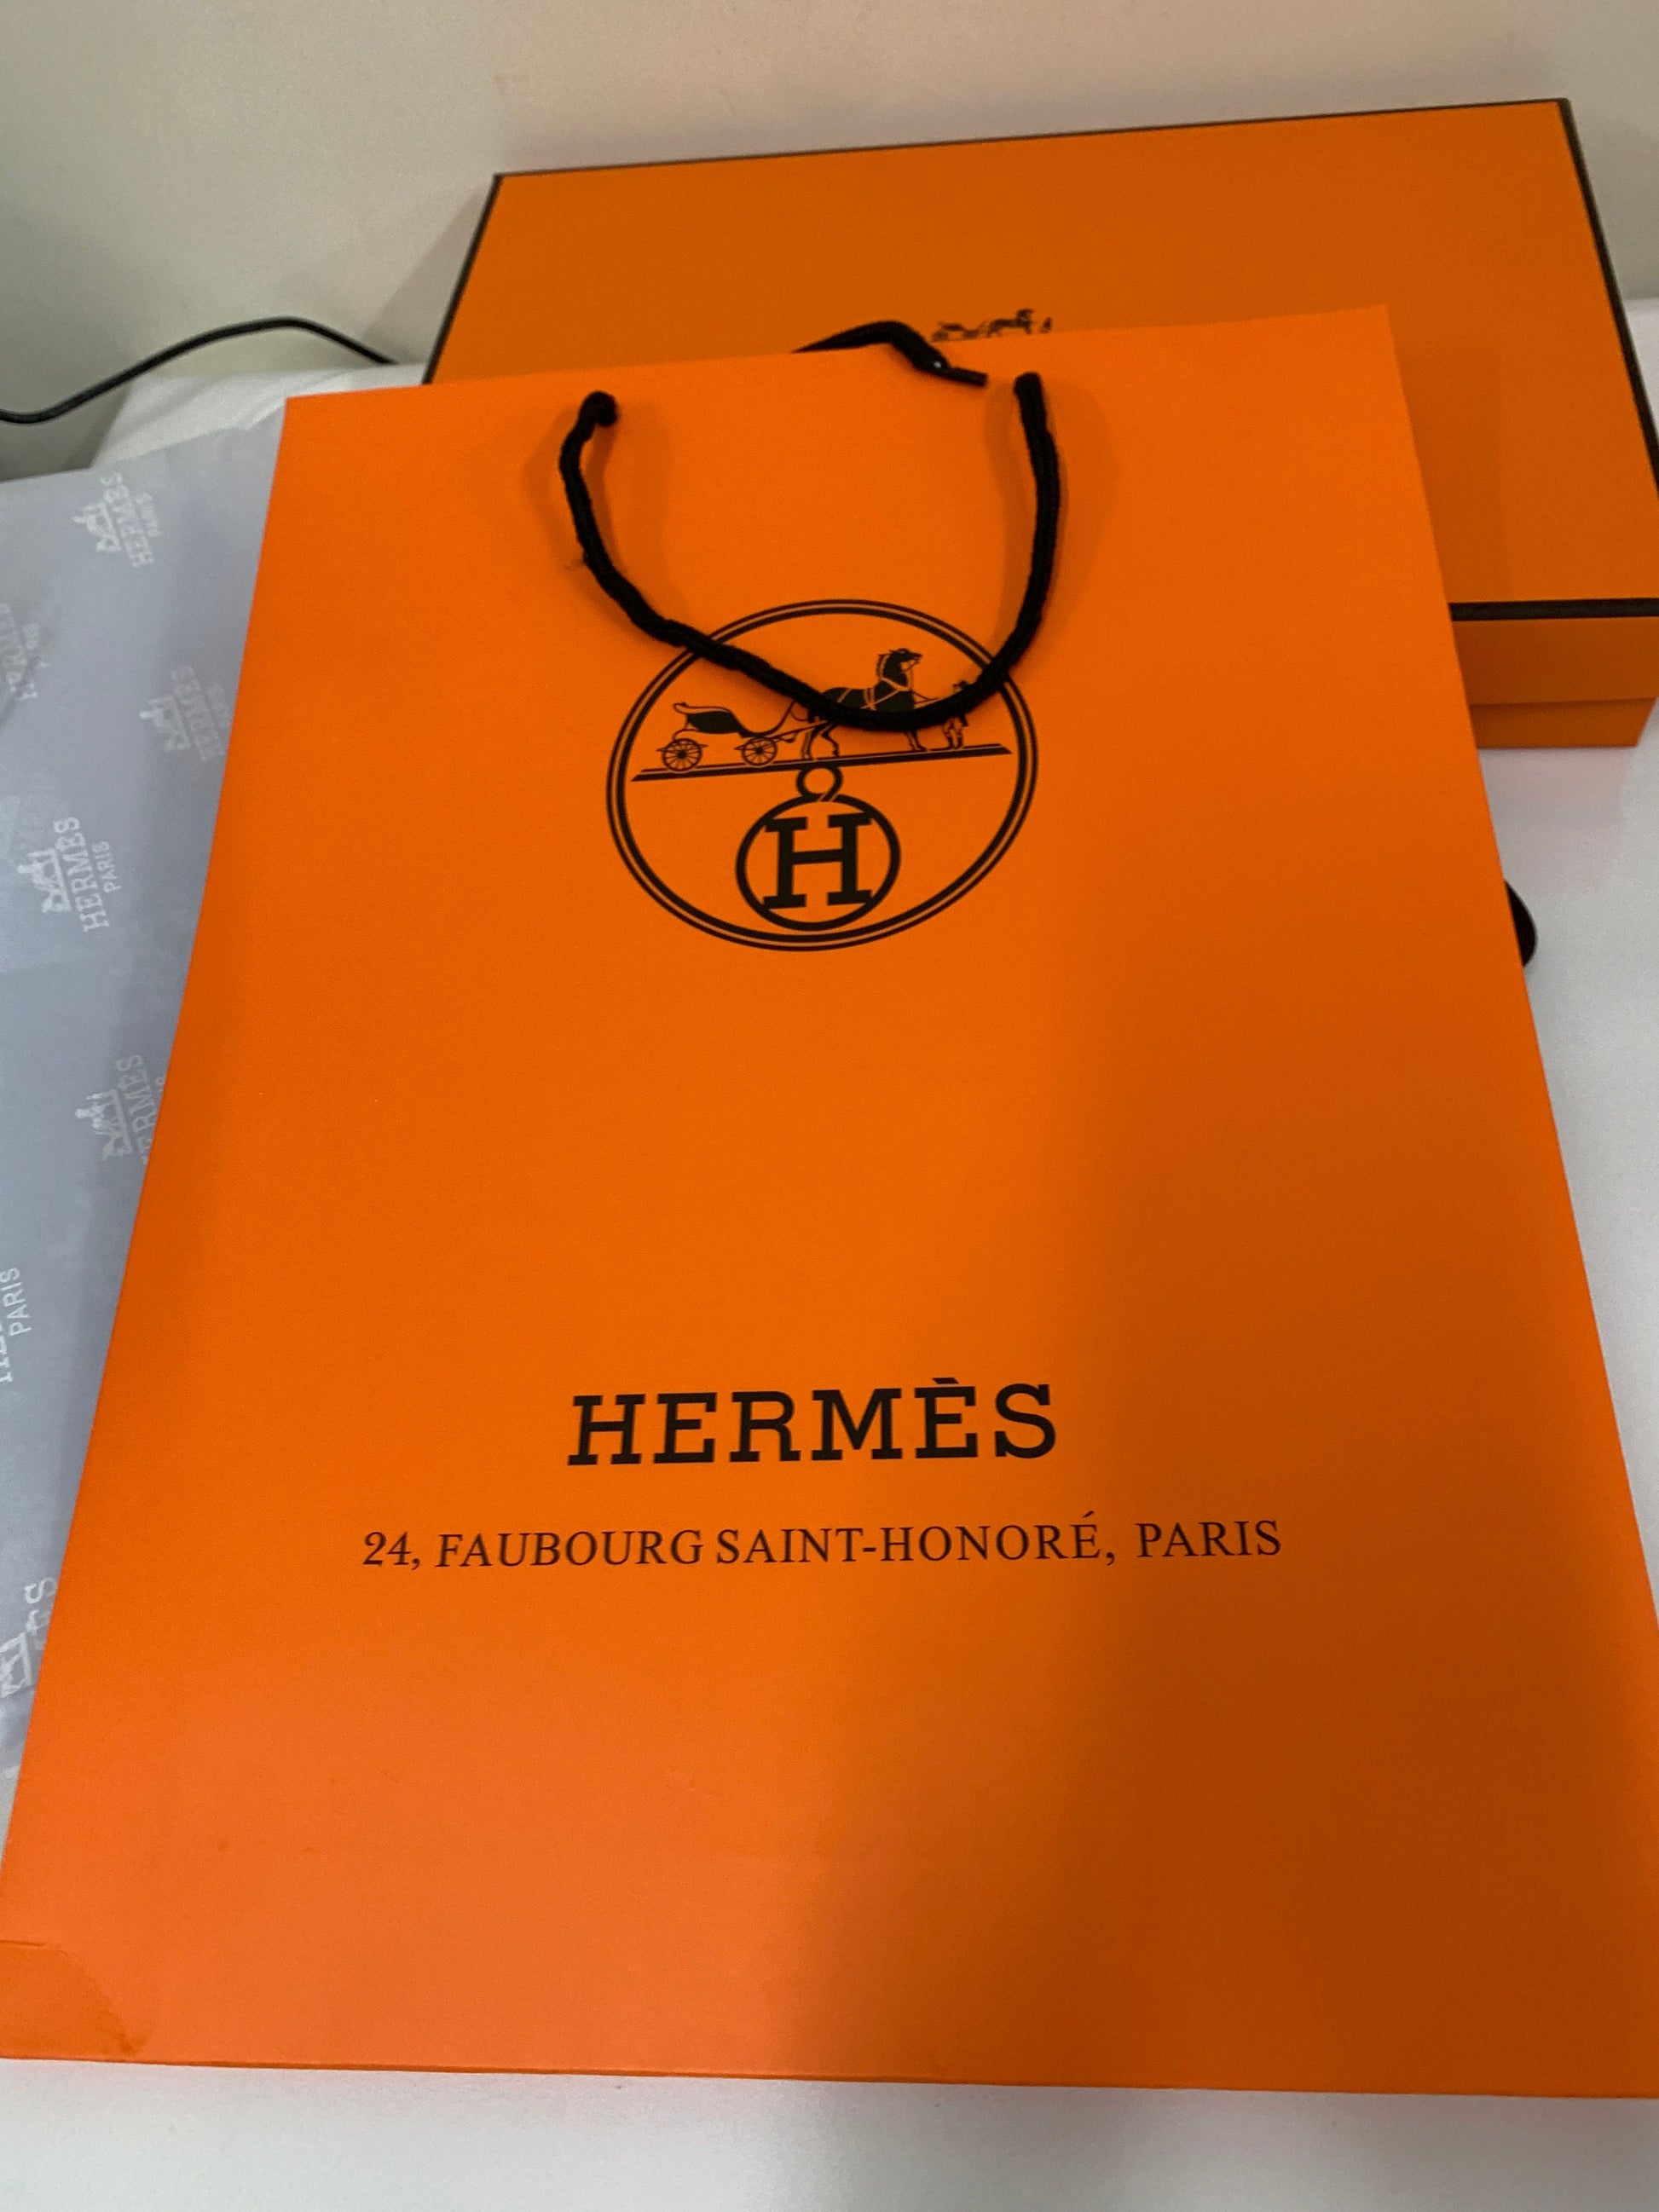 hermes packaging